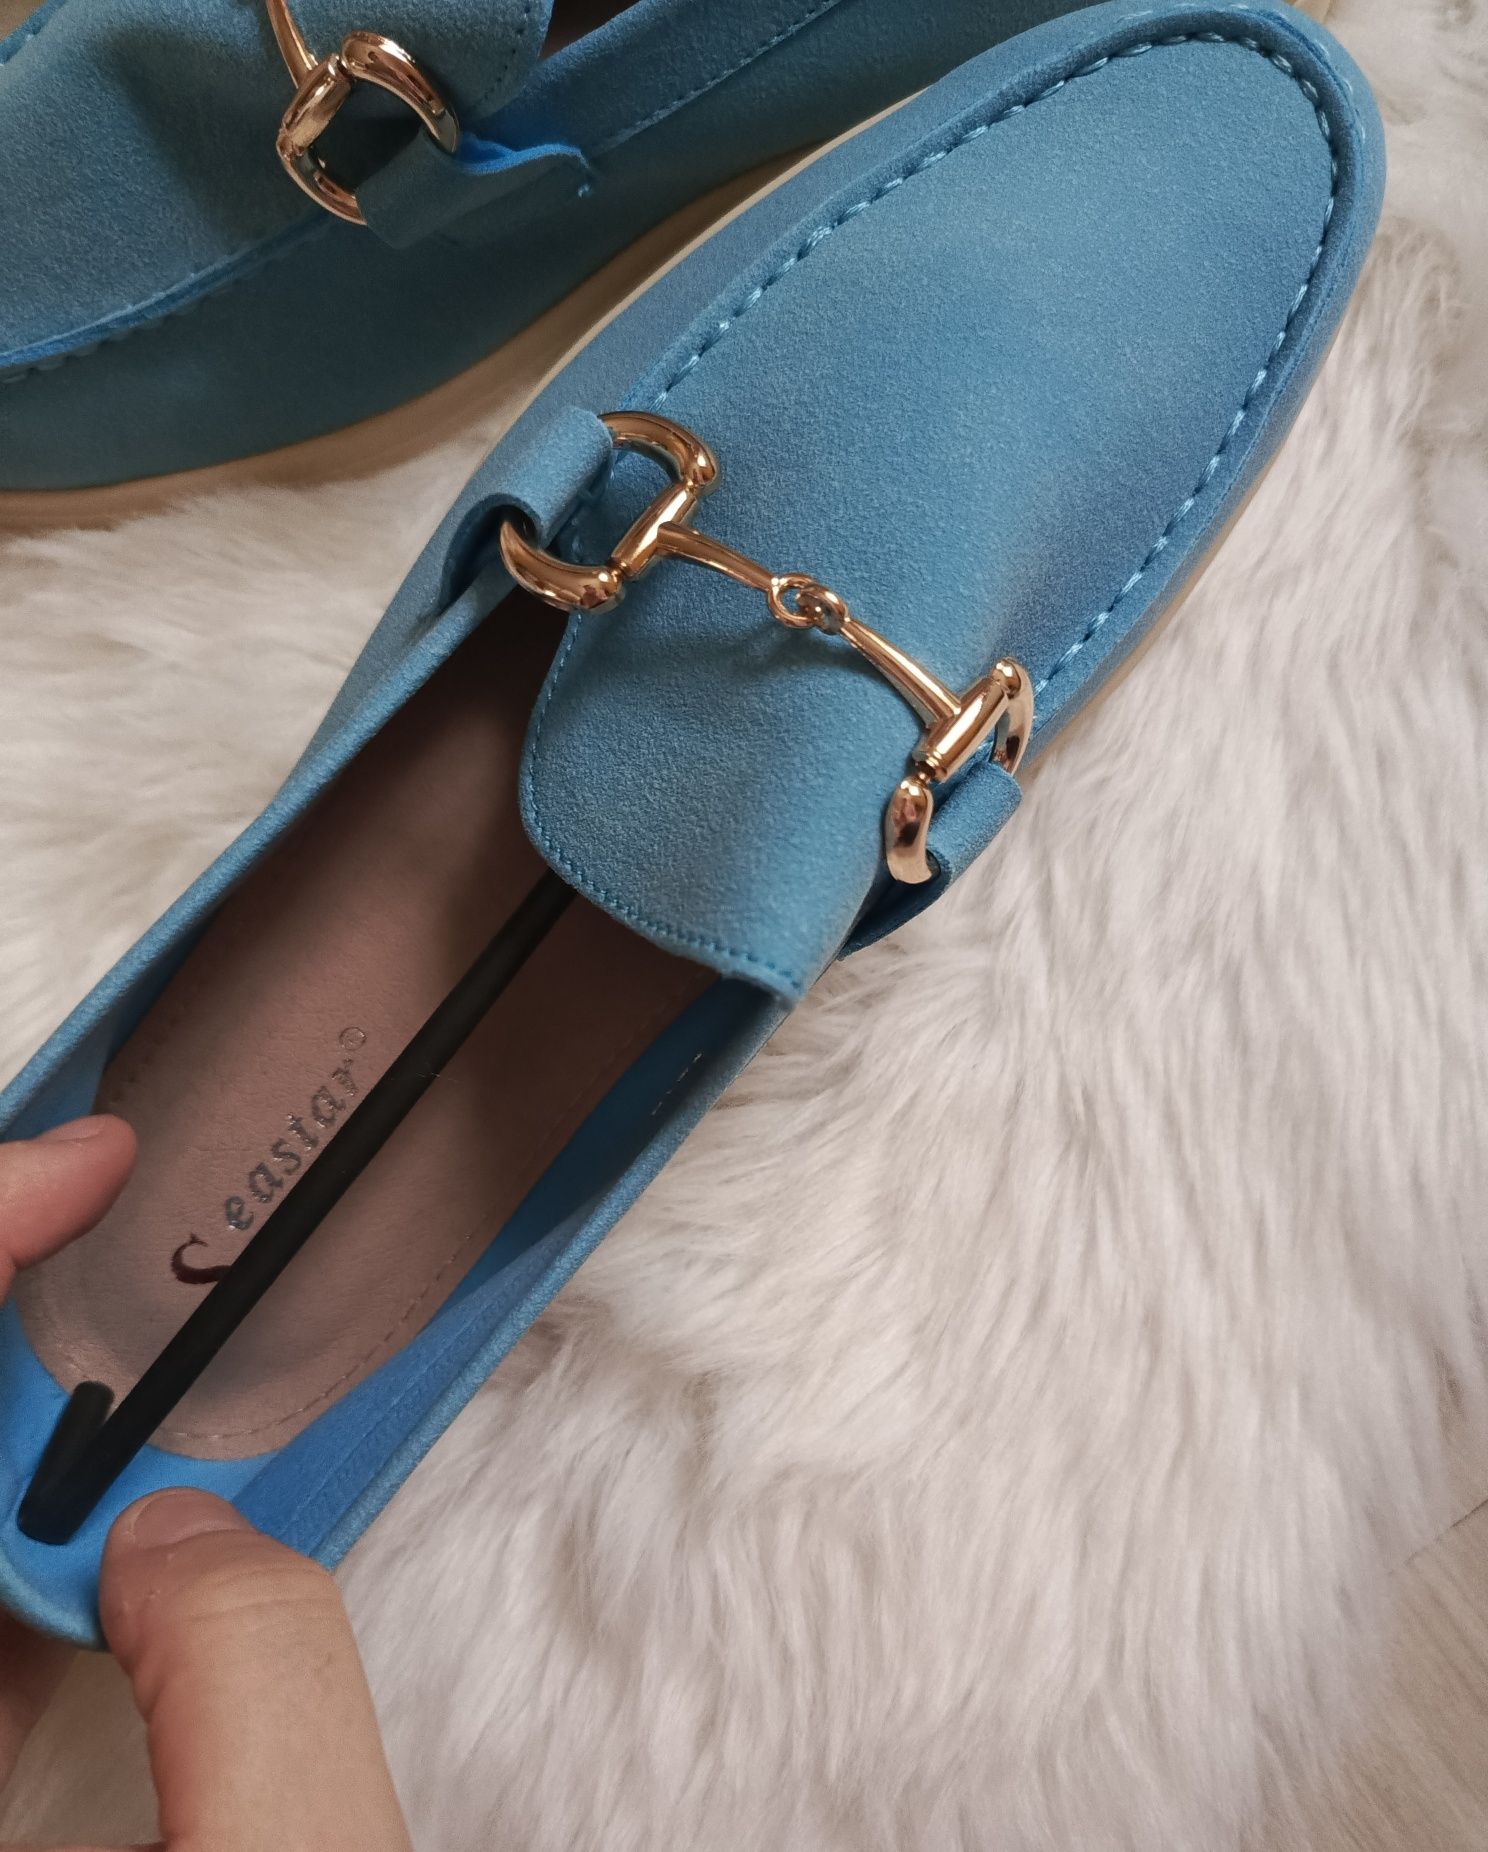 Mokasyny damskie buty niebieskie turkusowe przejściowe płaski obcas 40